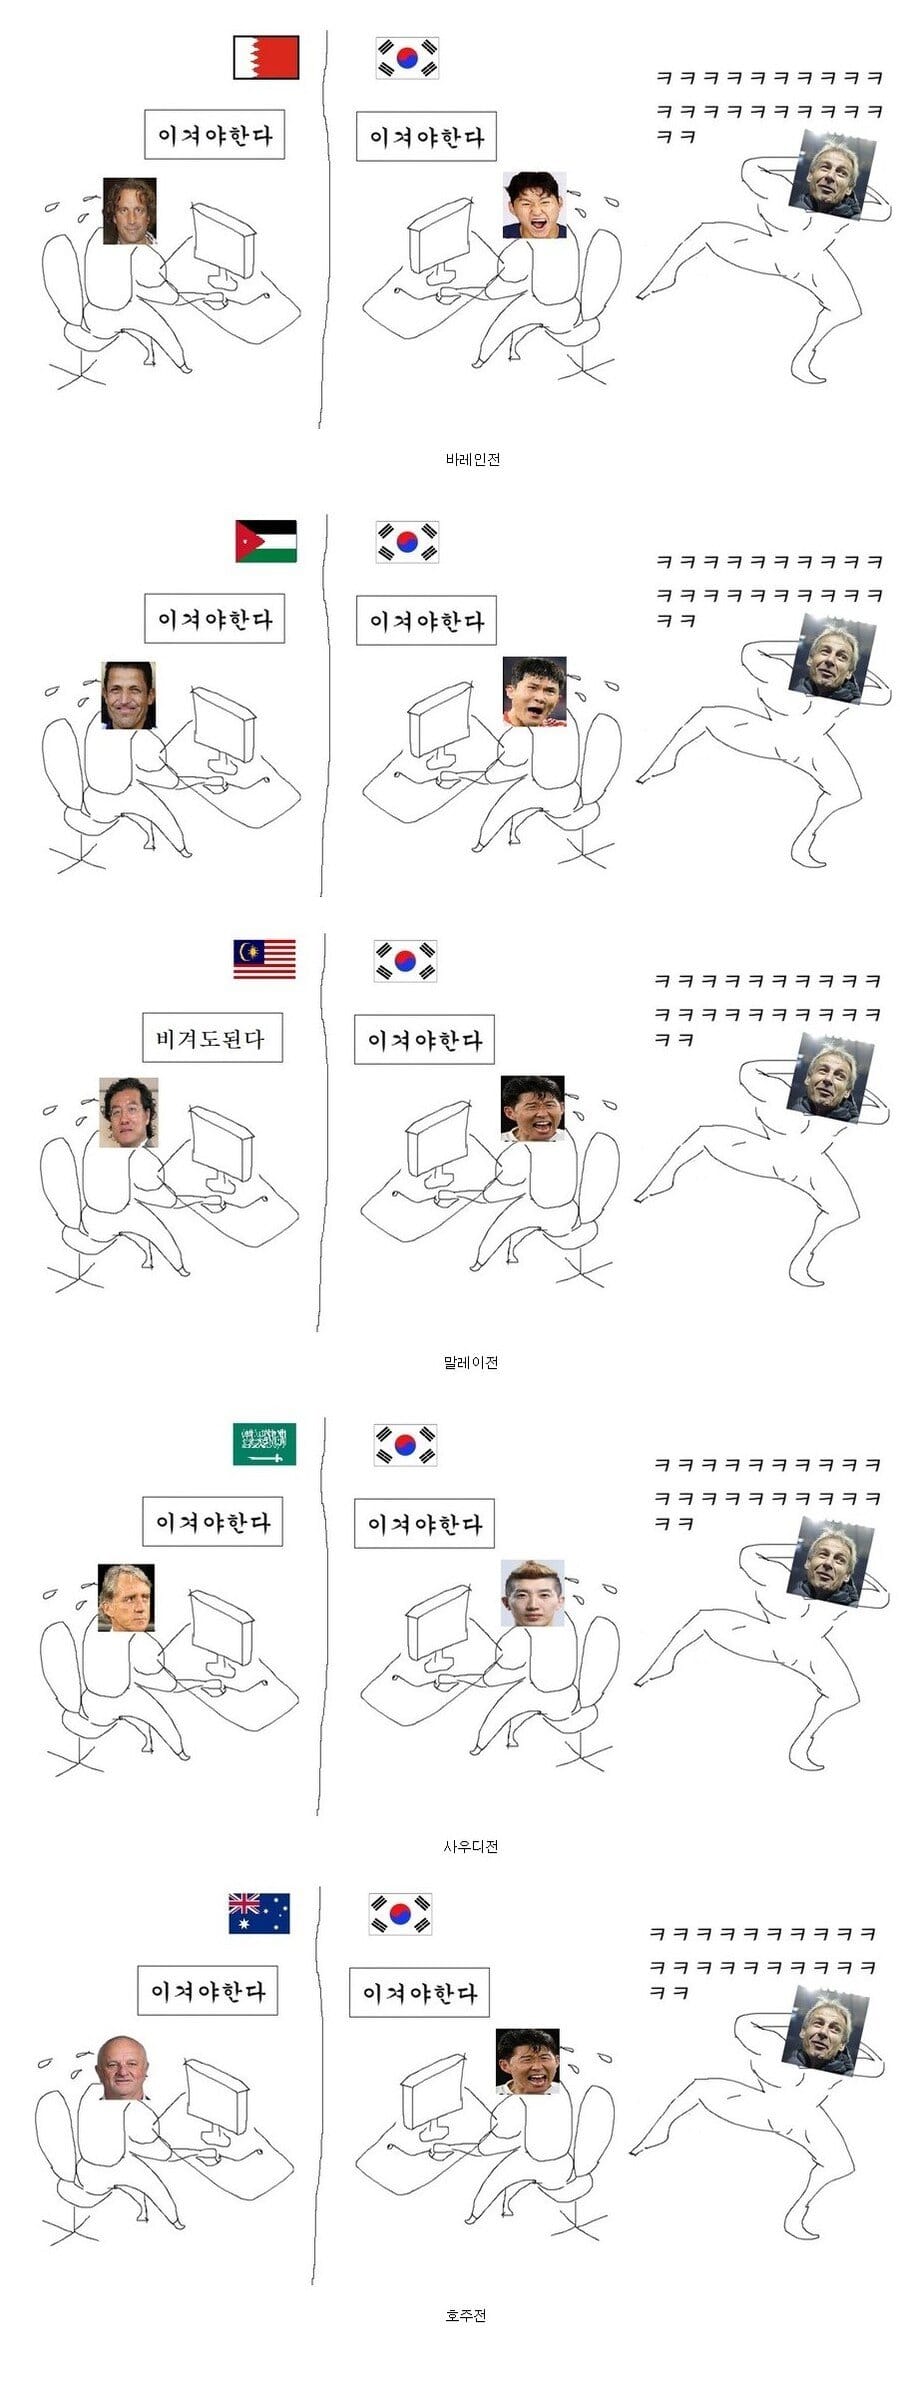 한국 축구팀 예선전 부터 8강까지 요약